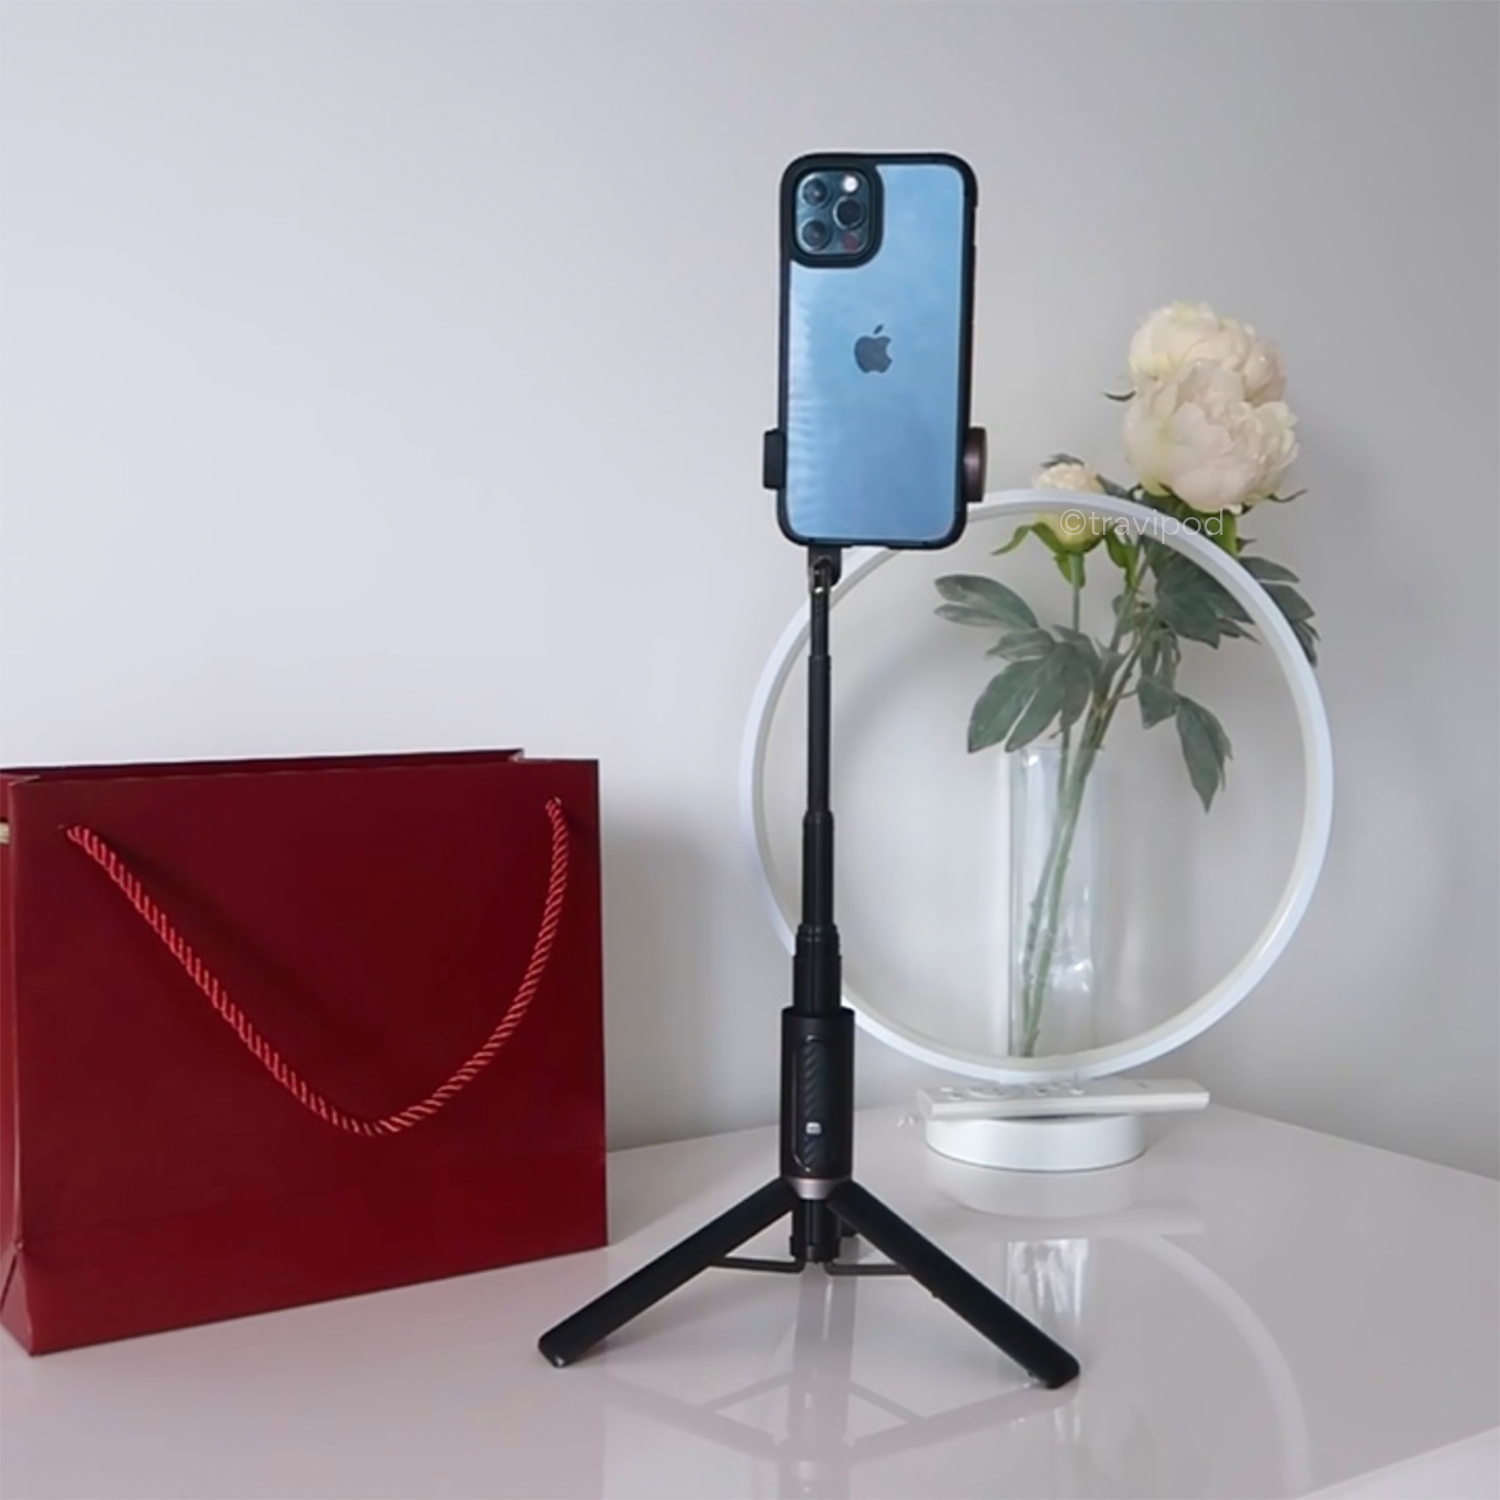 Portable Tripod & Selfie Stick